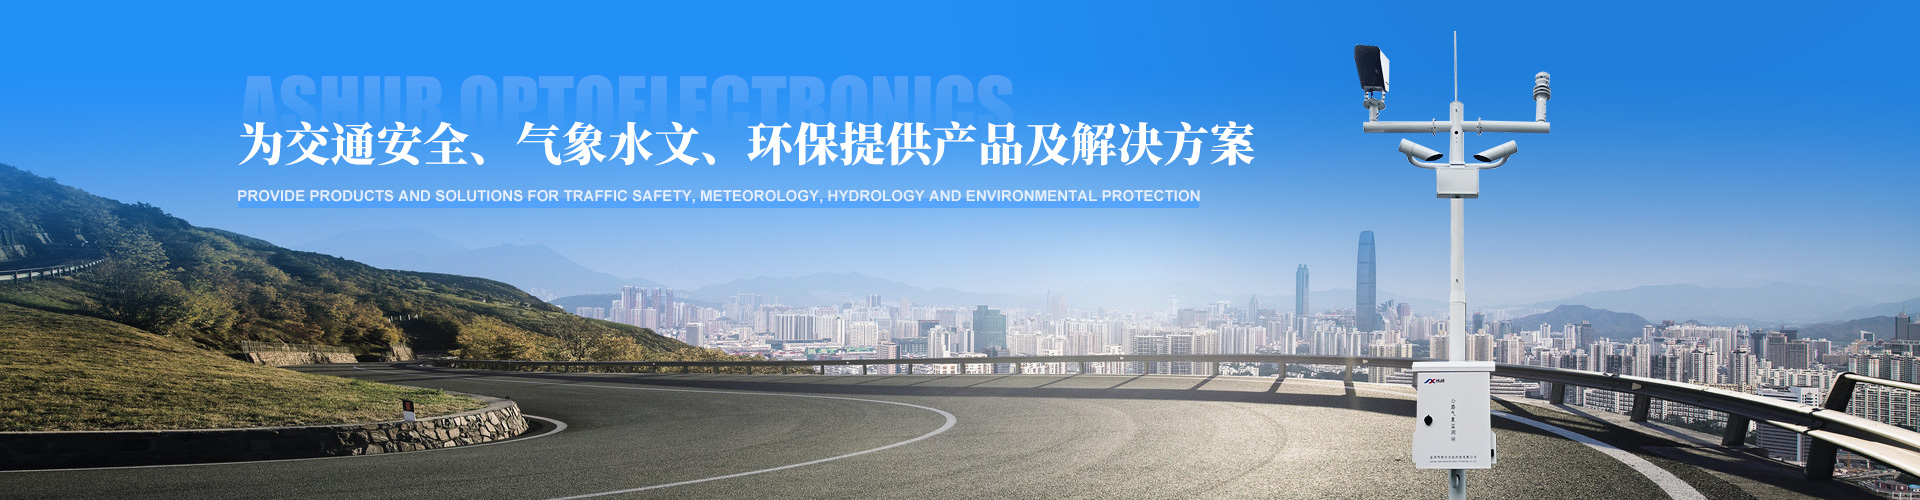 云感科技應邀參加第二十五屆中國高速公路信息化大會